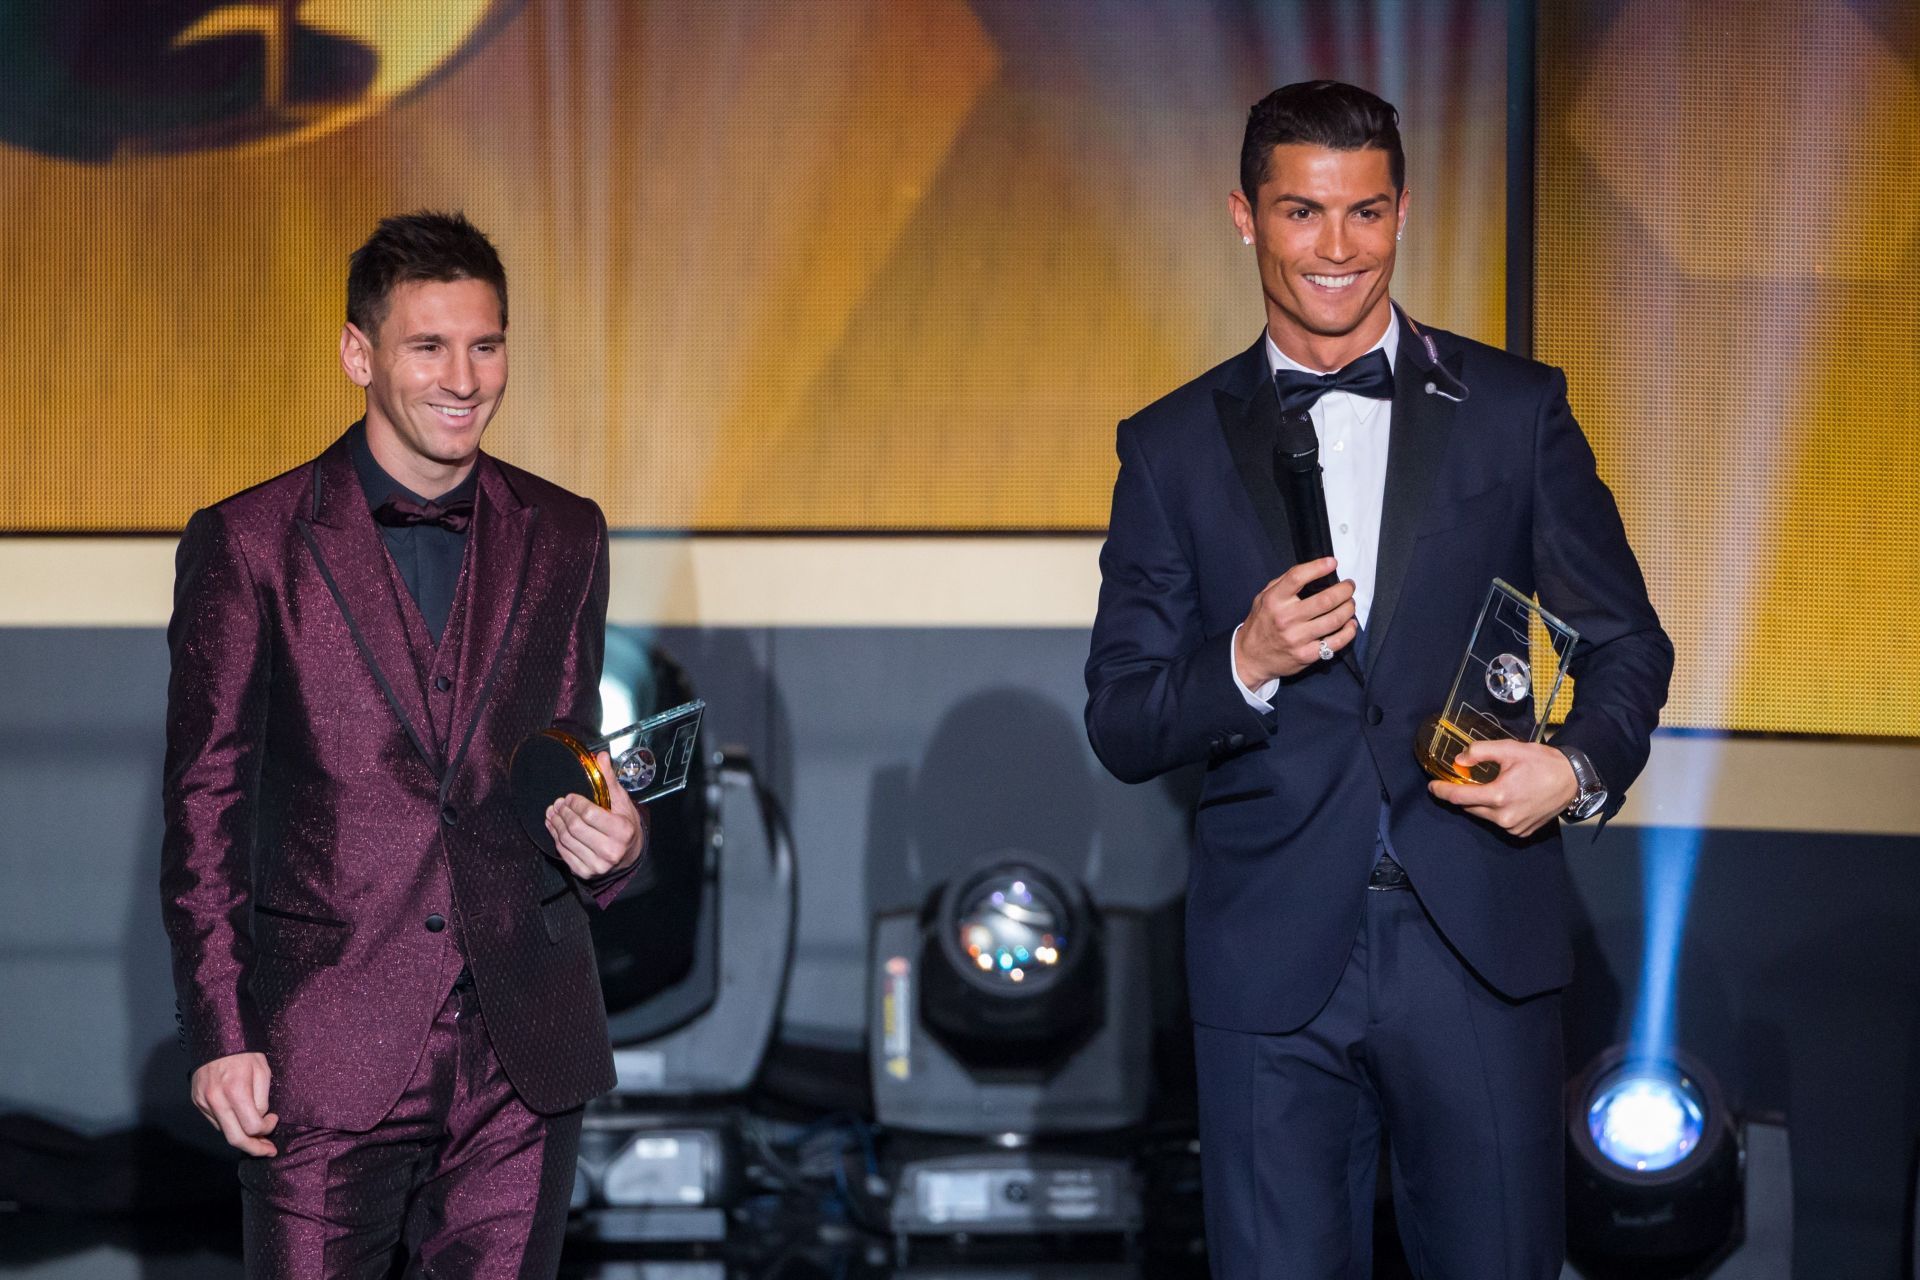 Carlo Ancelotti lauded Cristiano Ronaldo (right) and Lionel Messi.